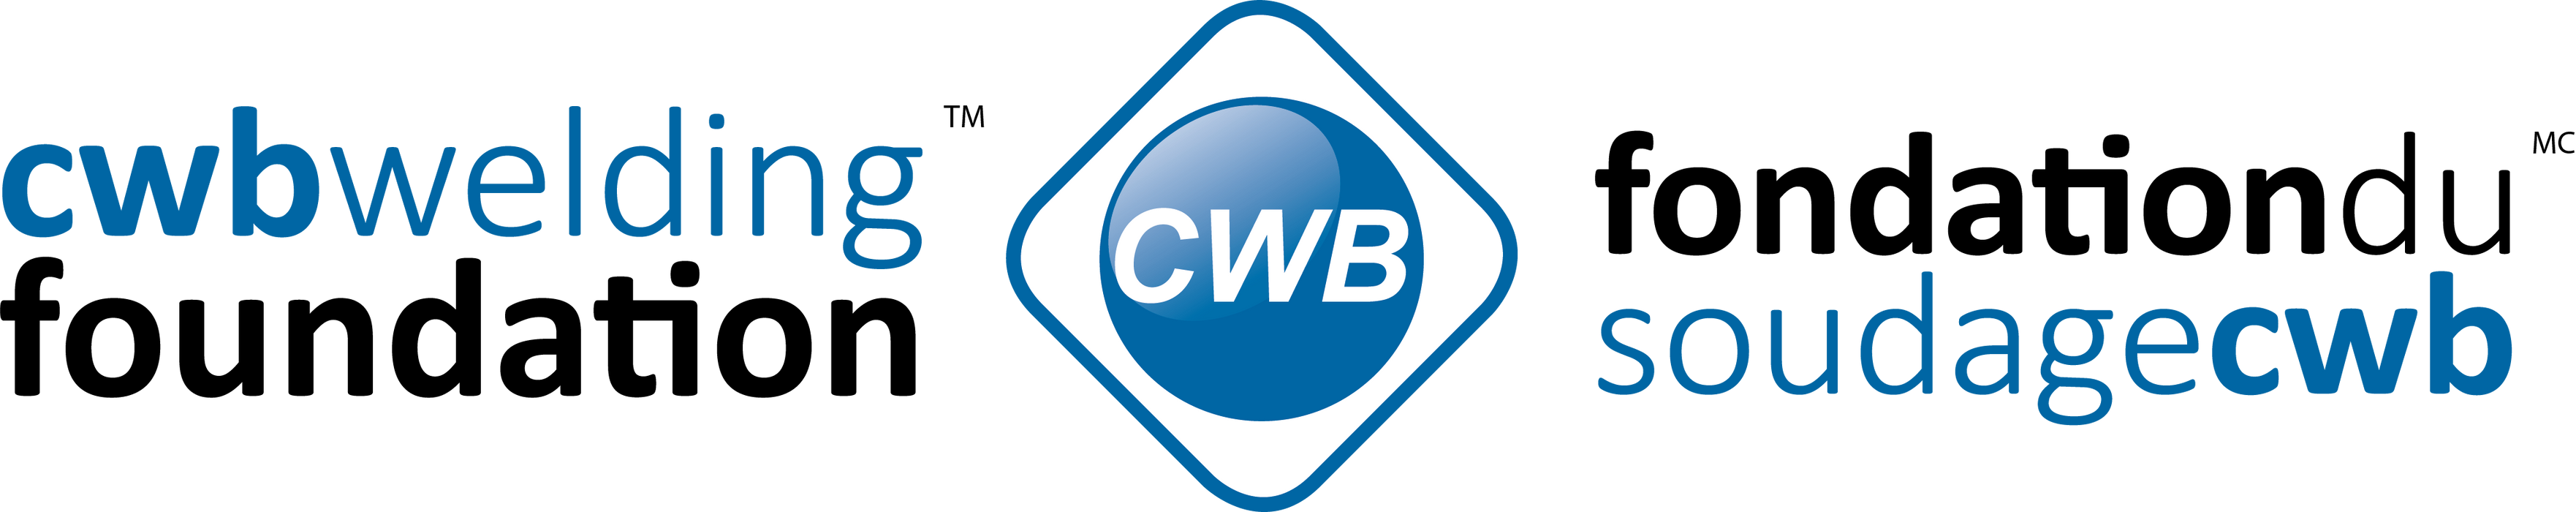 Logo CWB cousu sur les vestes